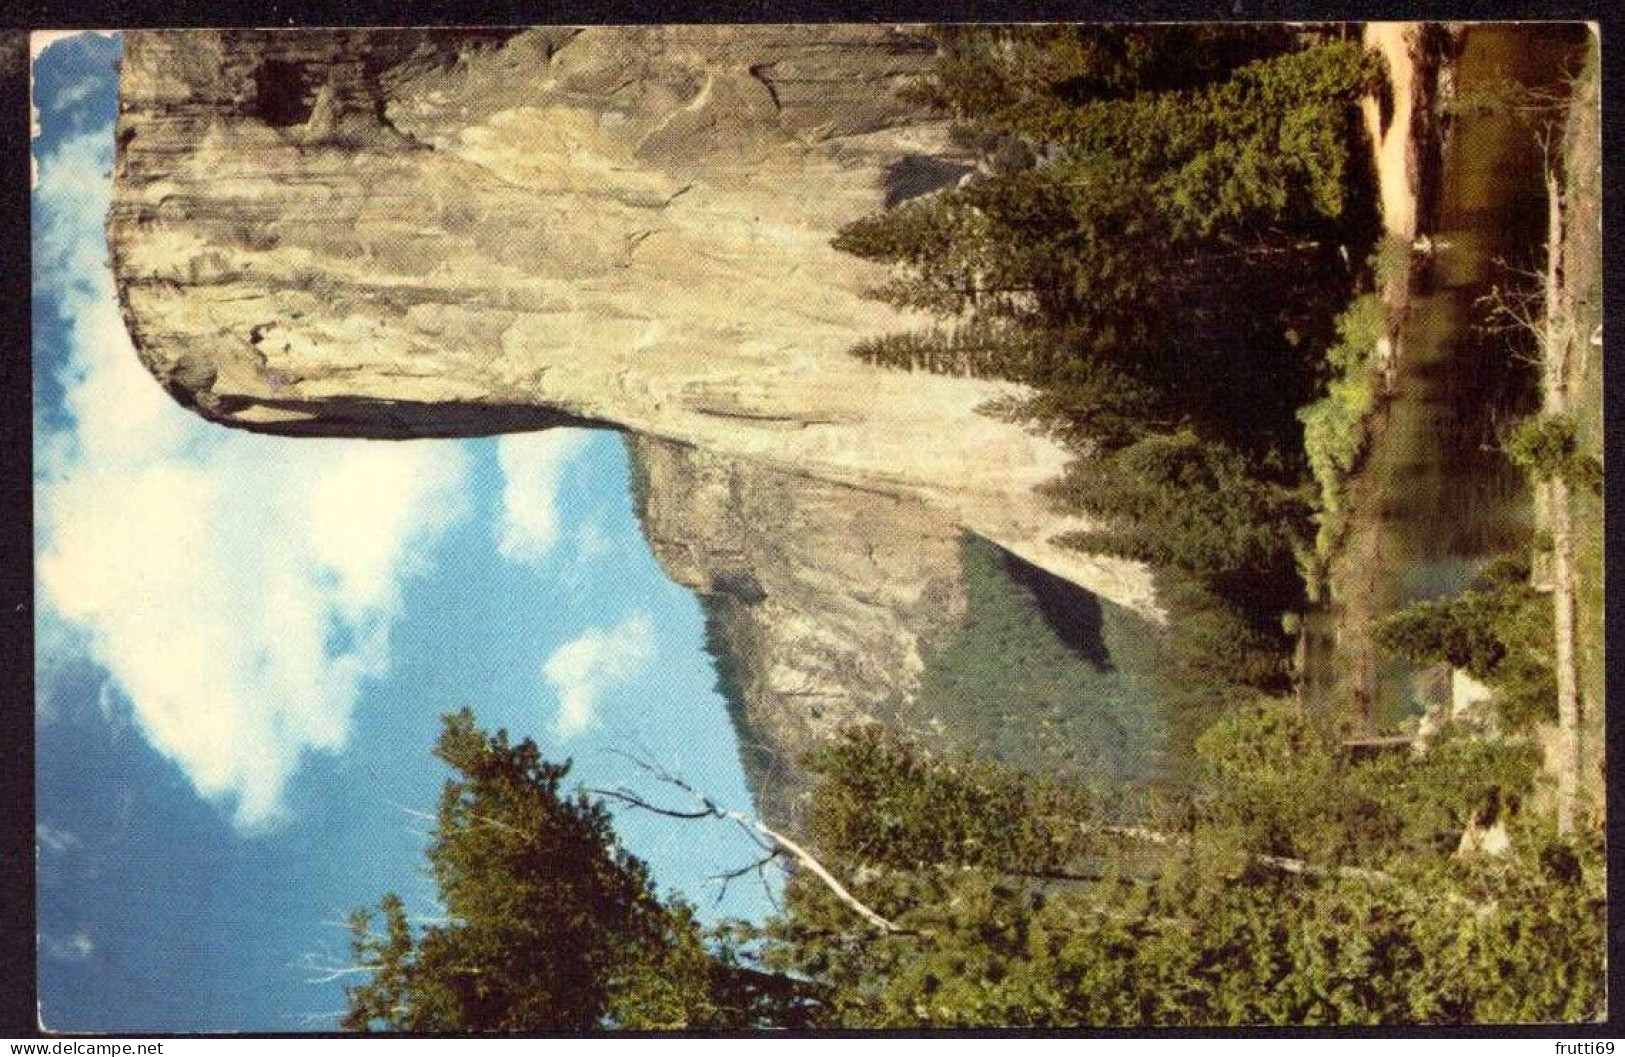 AK 125616 USA - California - Yosemite National Park - El Capitan - Yosemite